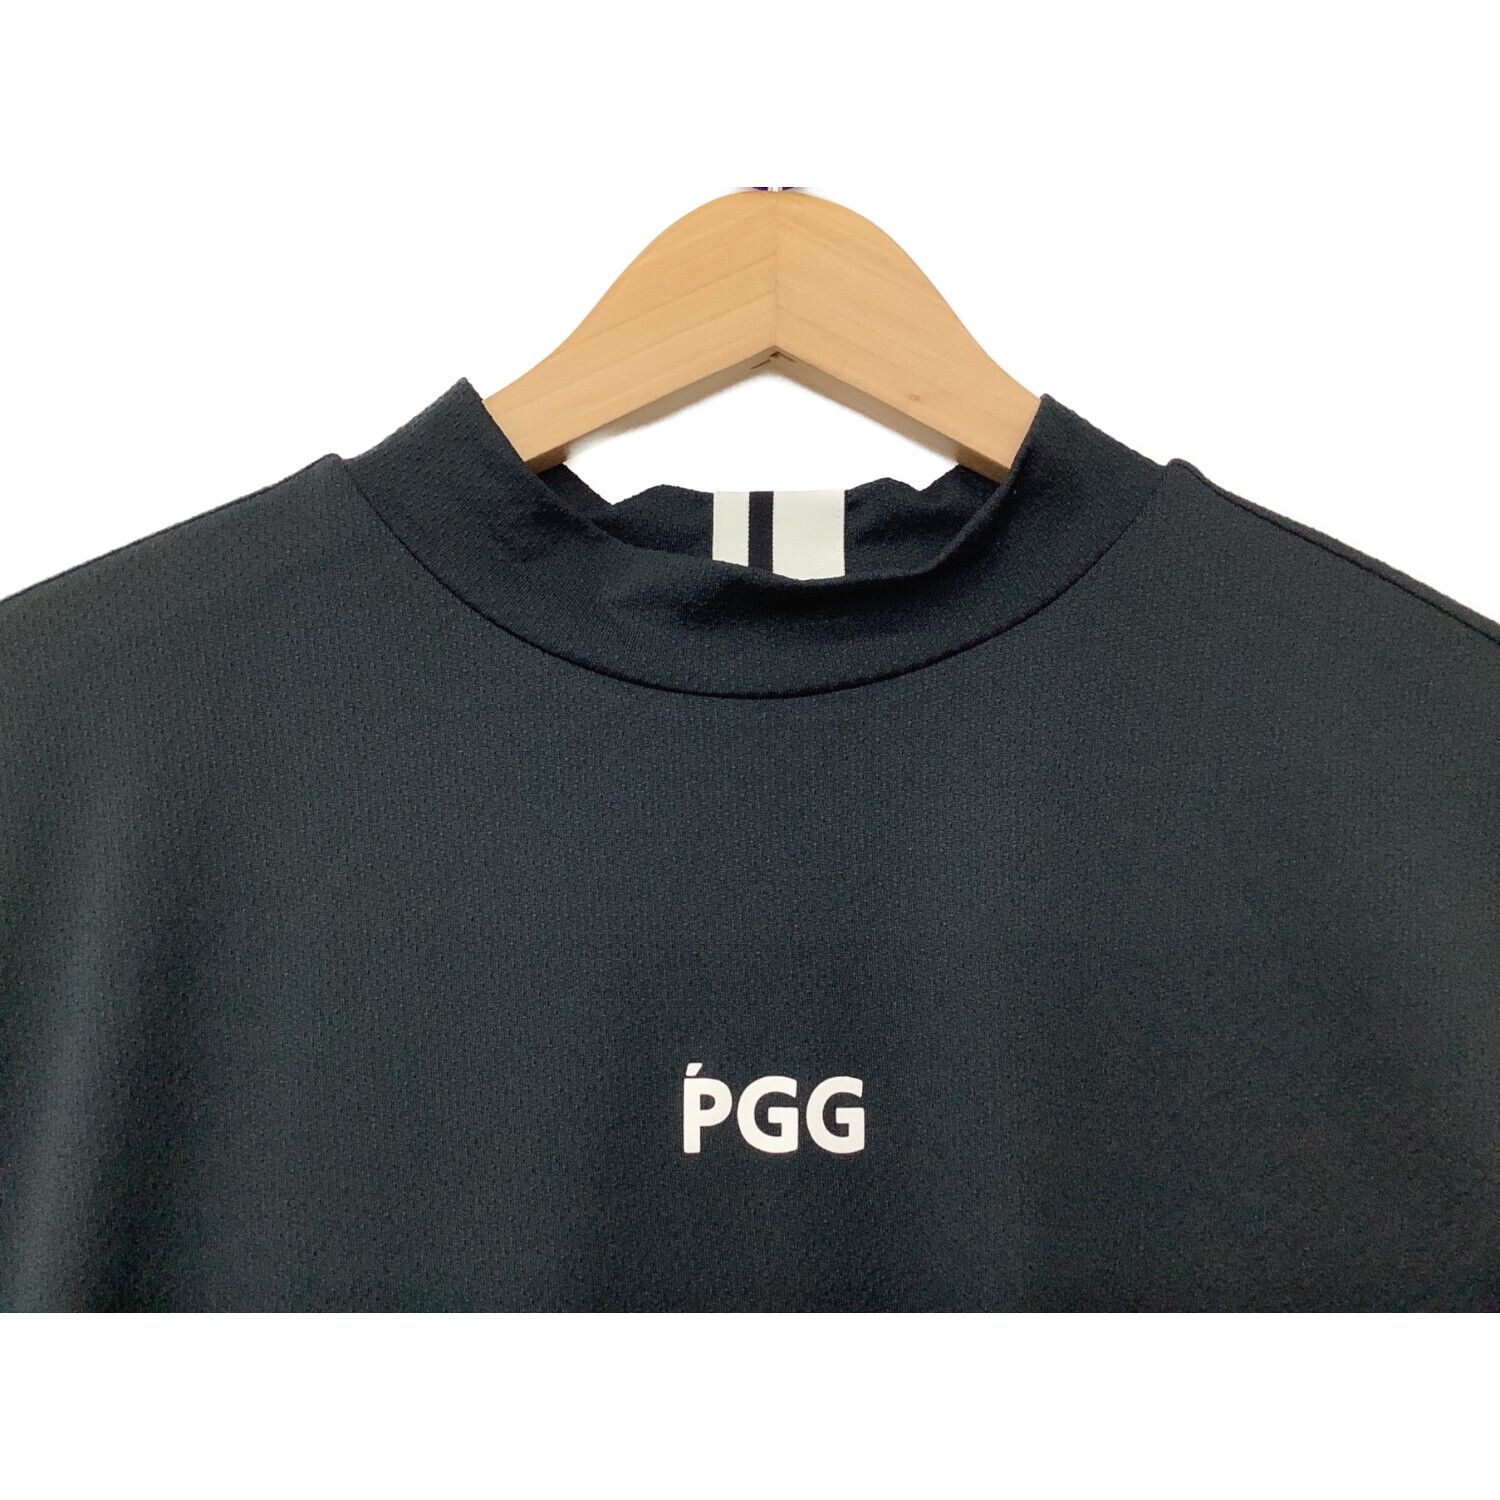 PGG (ピージージー) ゴルフウェア(トップス) メンズ SIZE LL ブラック